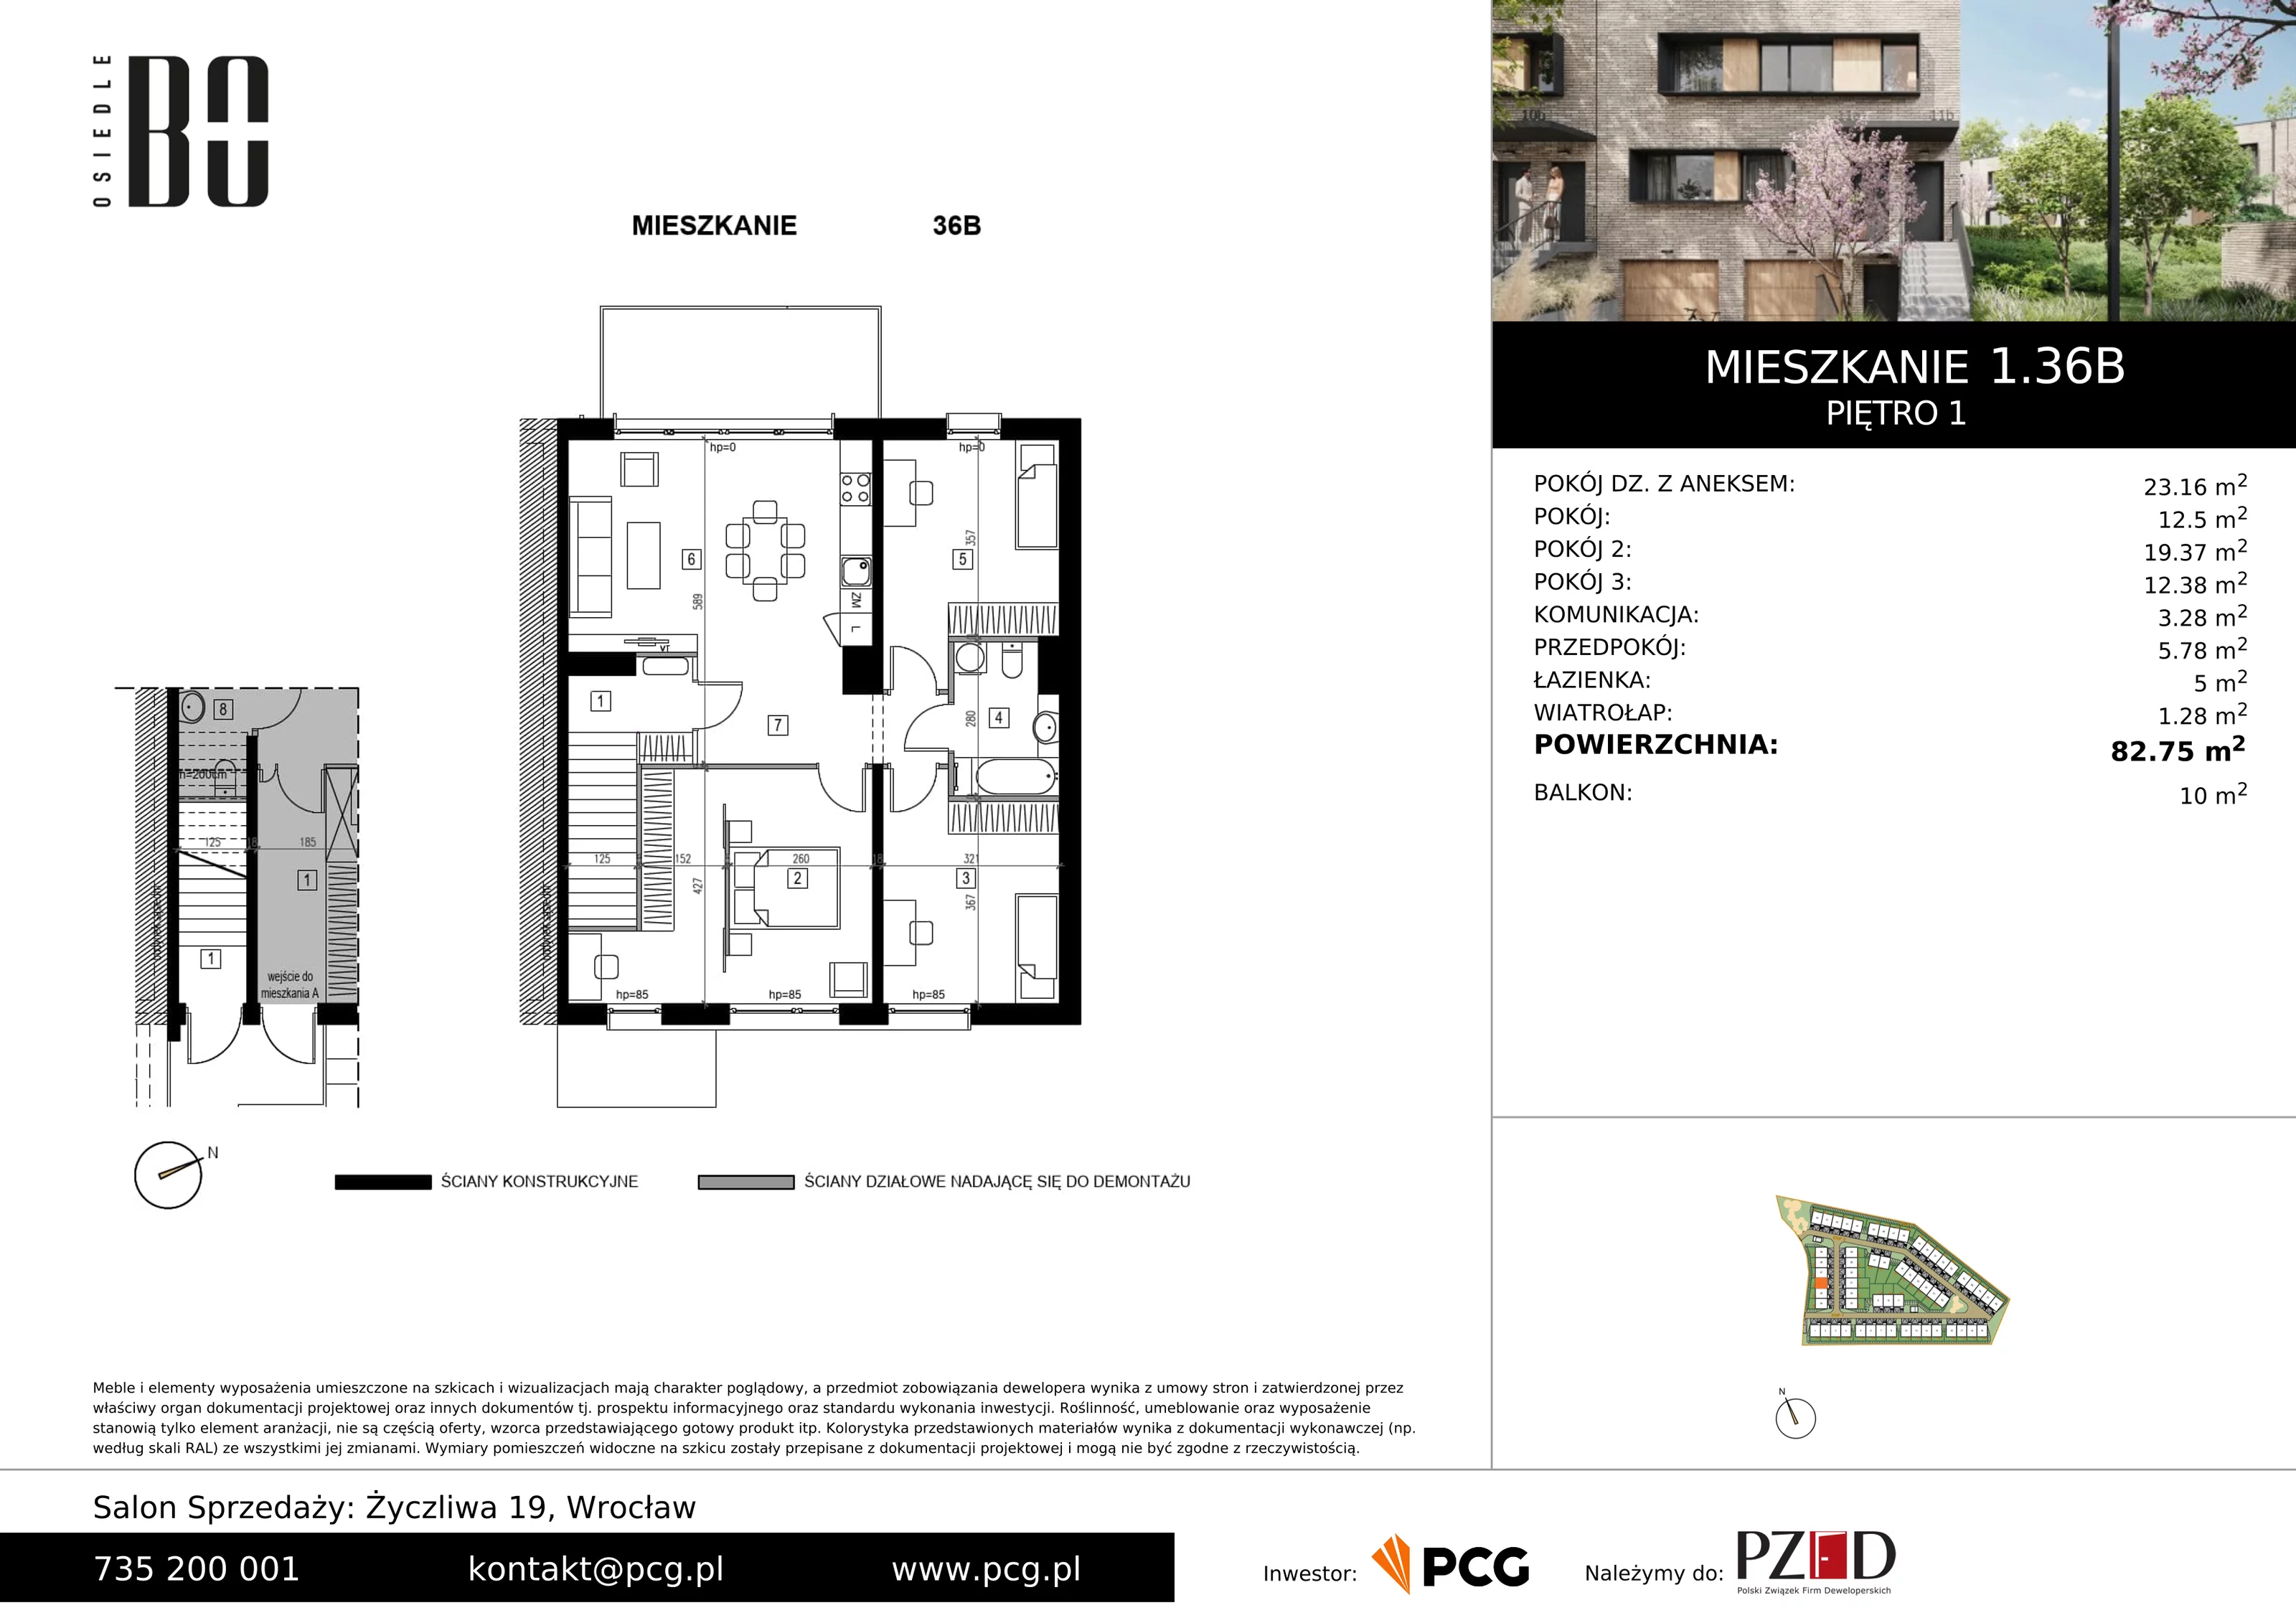 Apartament 82,75 m², piętro 1, oferta nr 1.36B, Osiedle BO, Wrocław, Kowale, ul. Bociana